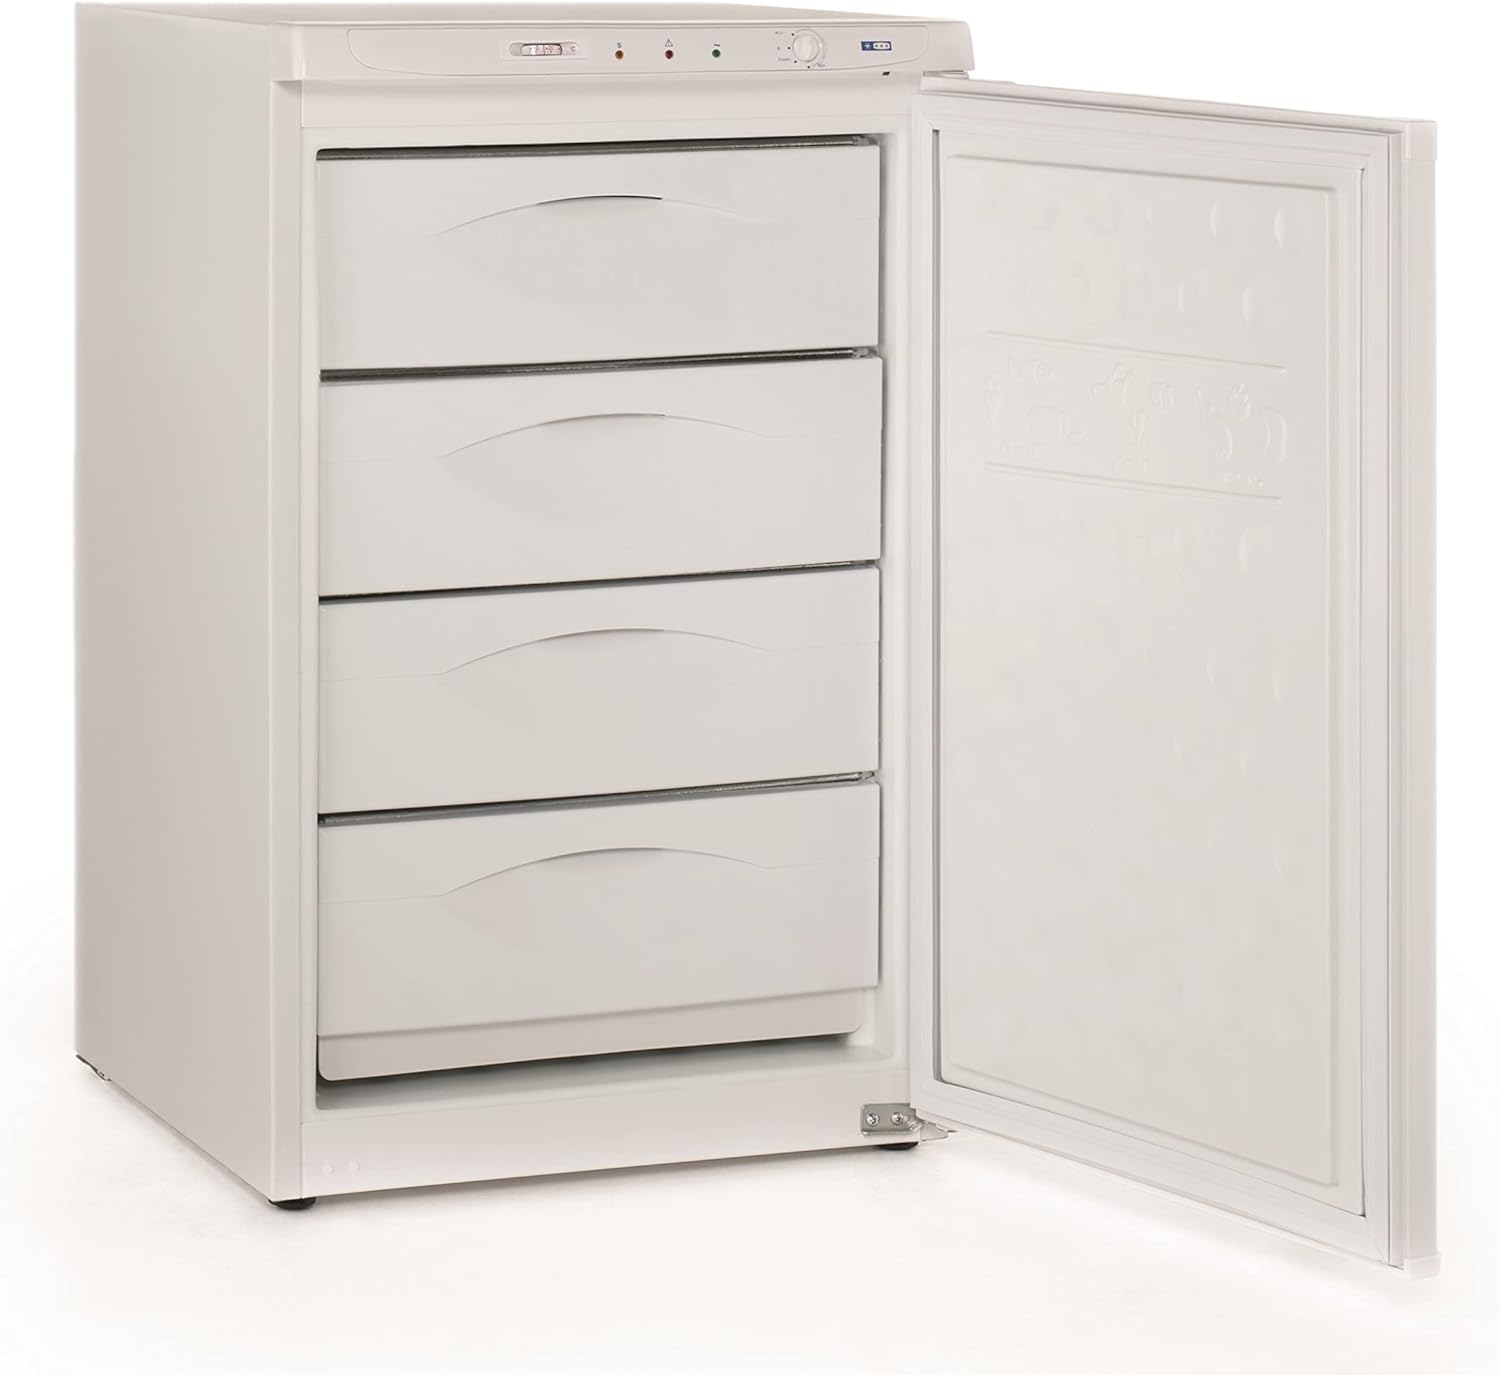 MBH Congelatore verticale professionale piccolo con 4 cassetti per ospitalità armadio congelatore industriale 84 litri ristorante